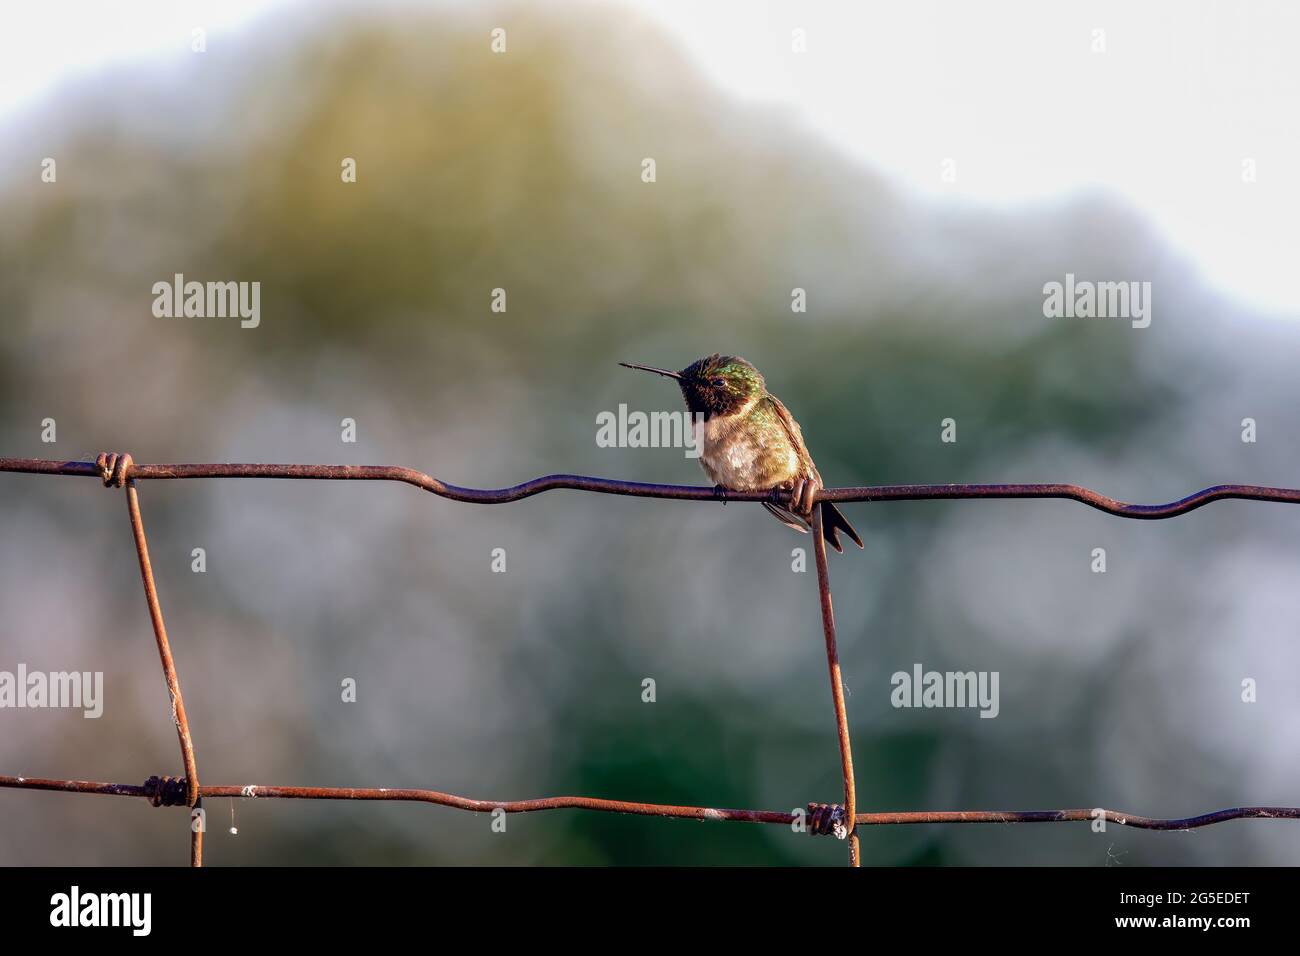 Colibrí de garganta rubia (Archilochus colubris) sentado en una valla Foto de stock